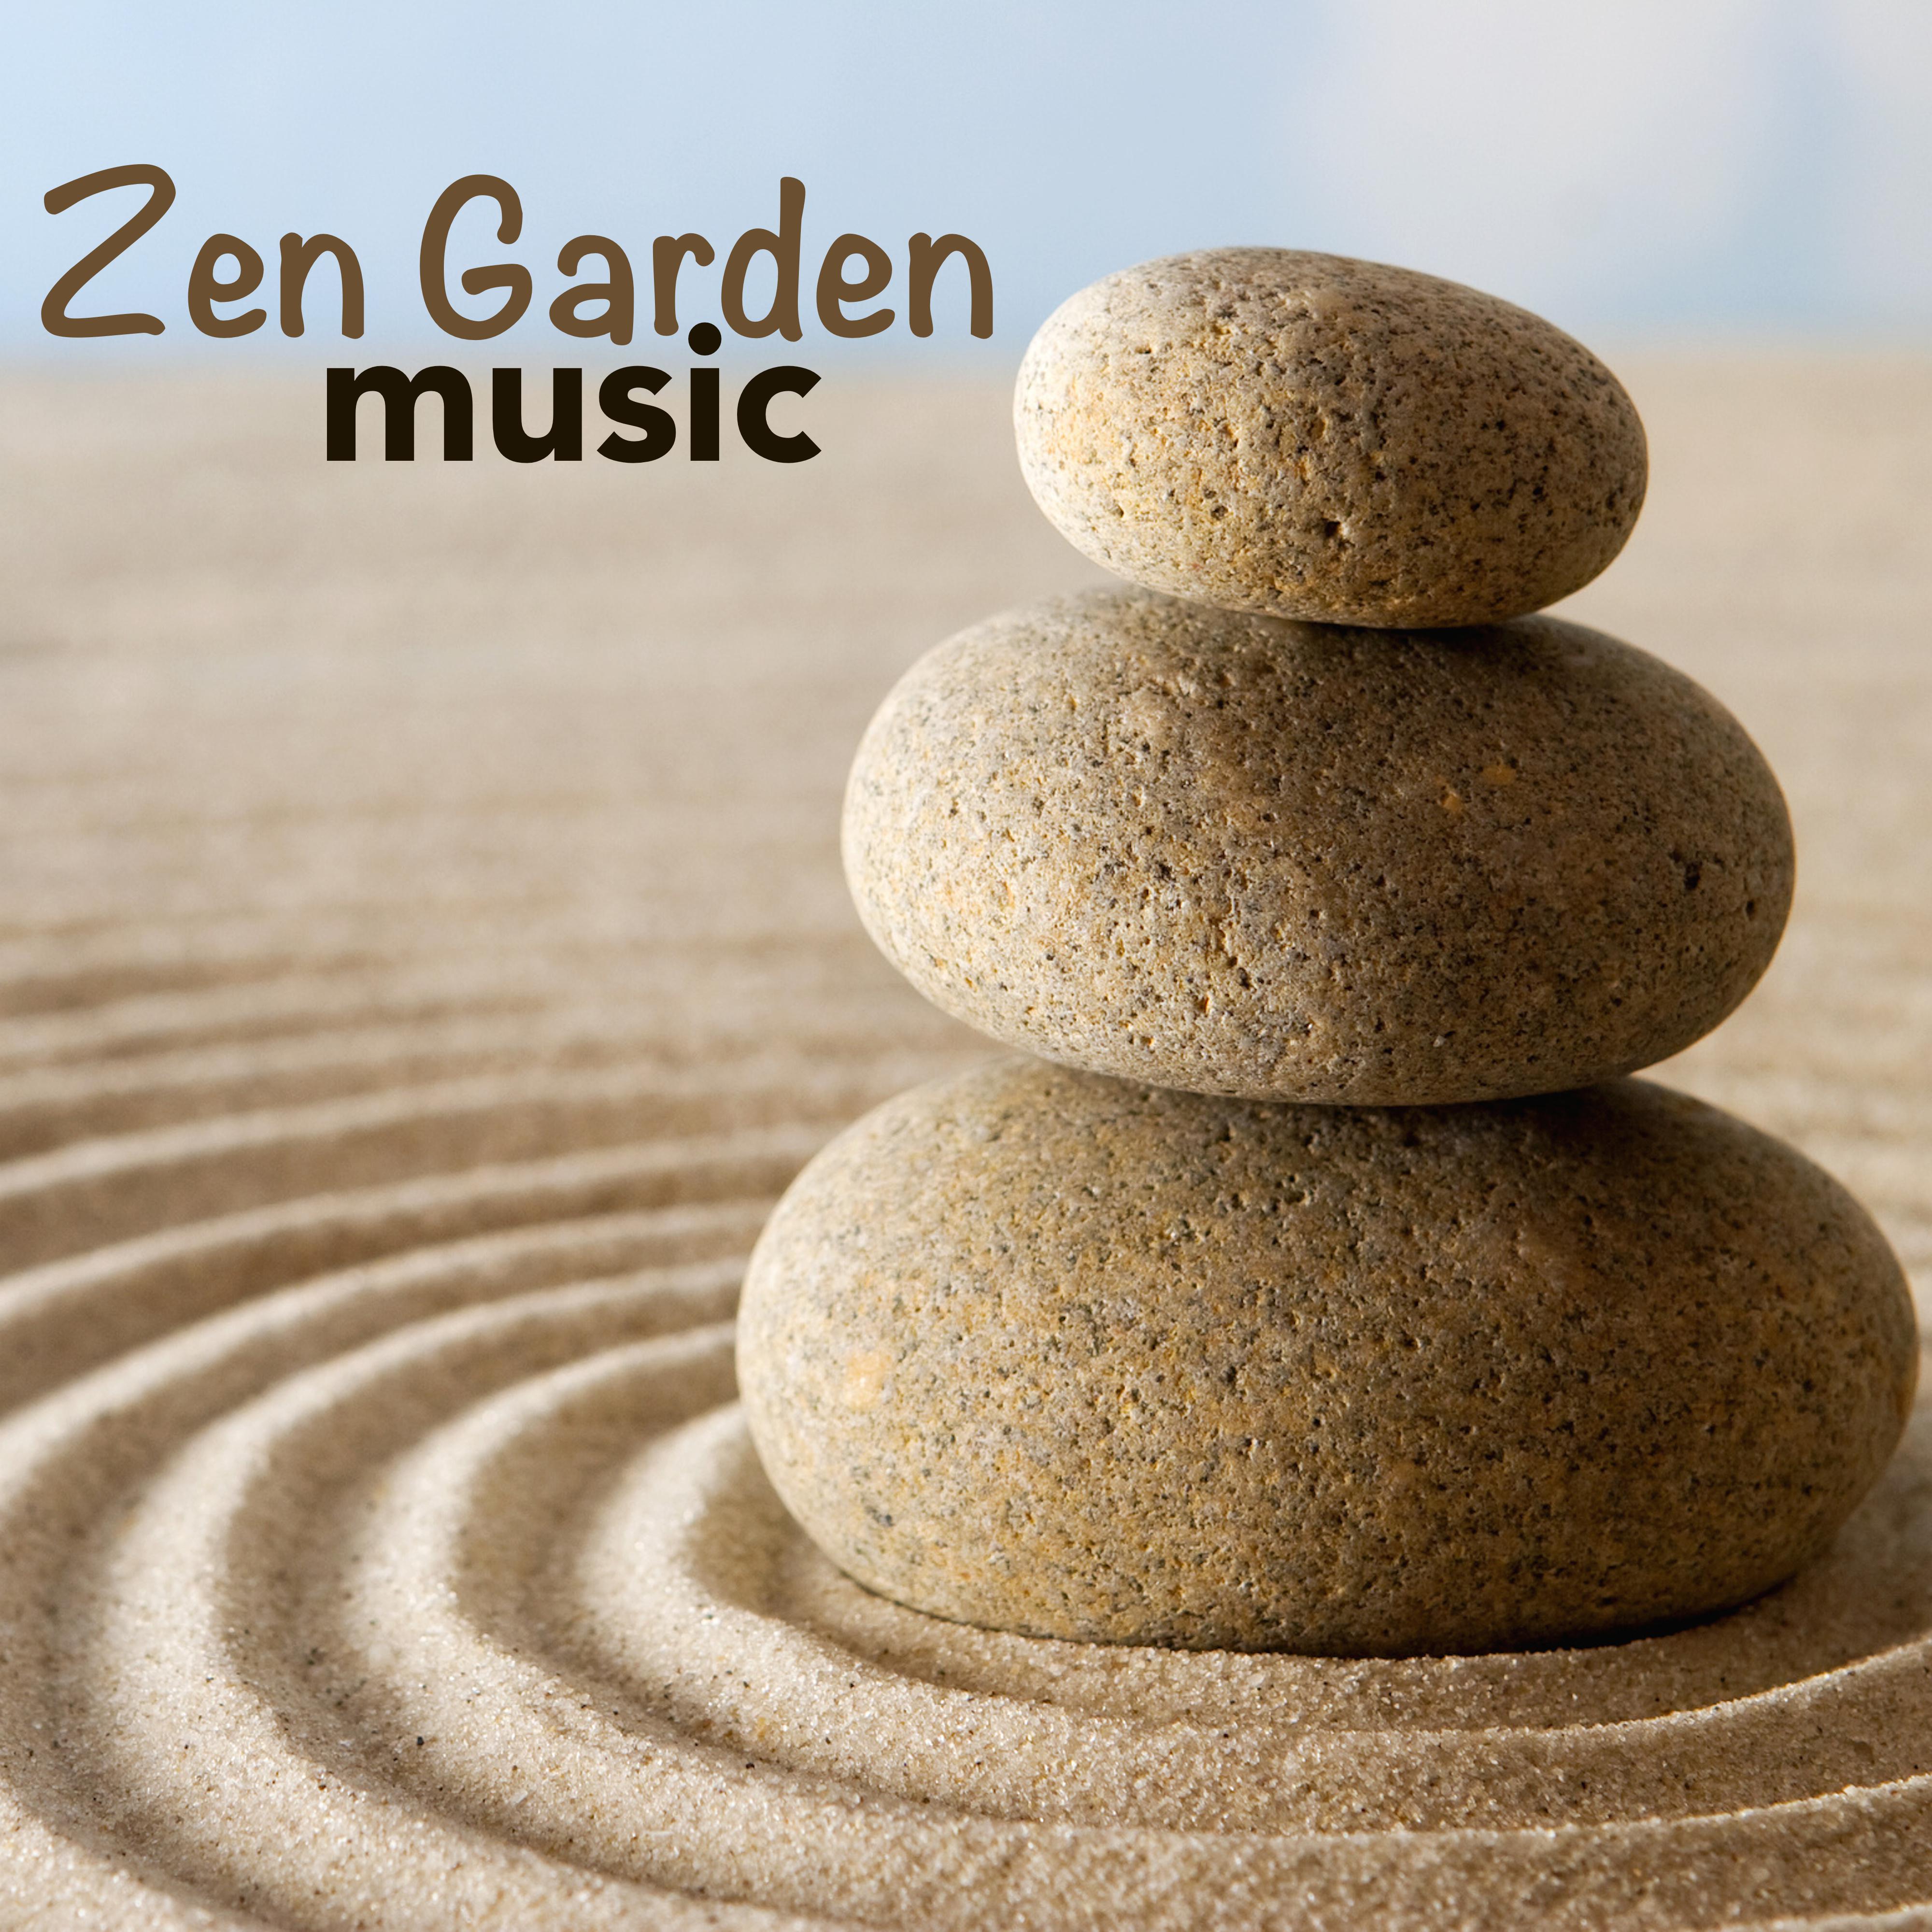 Zen Garden Music - Positive Zen Music & Asian Japanese Music with Nature Sounds